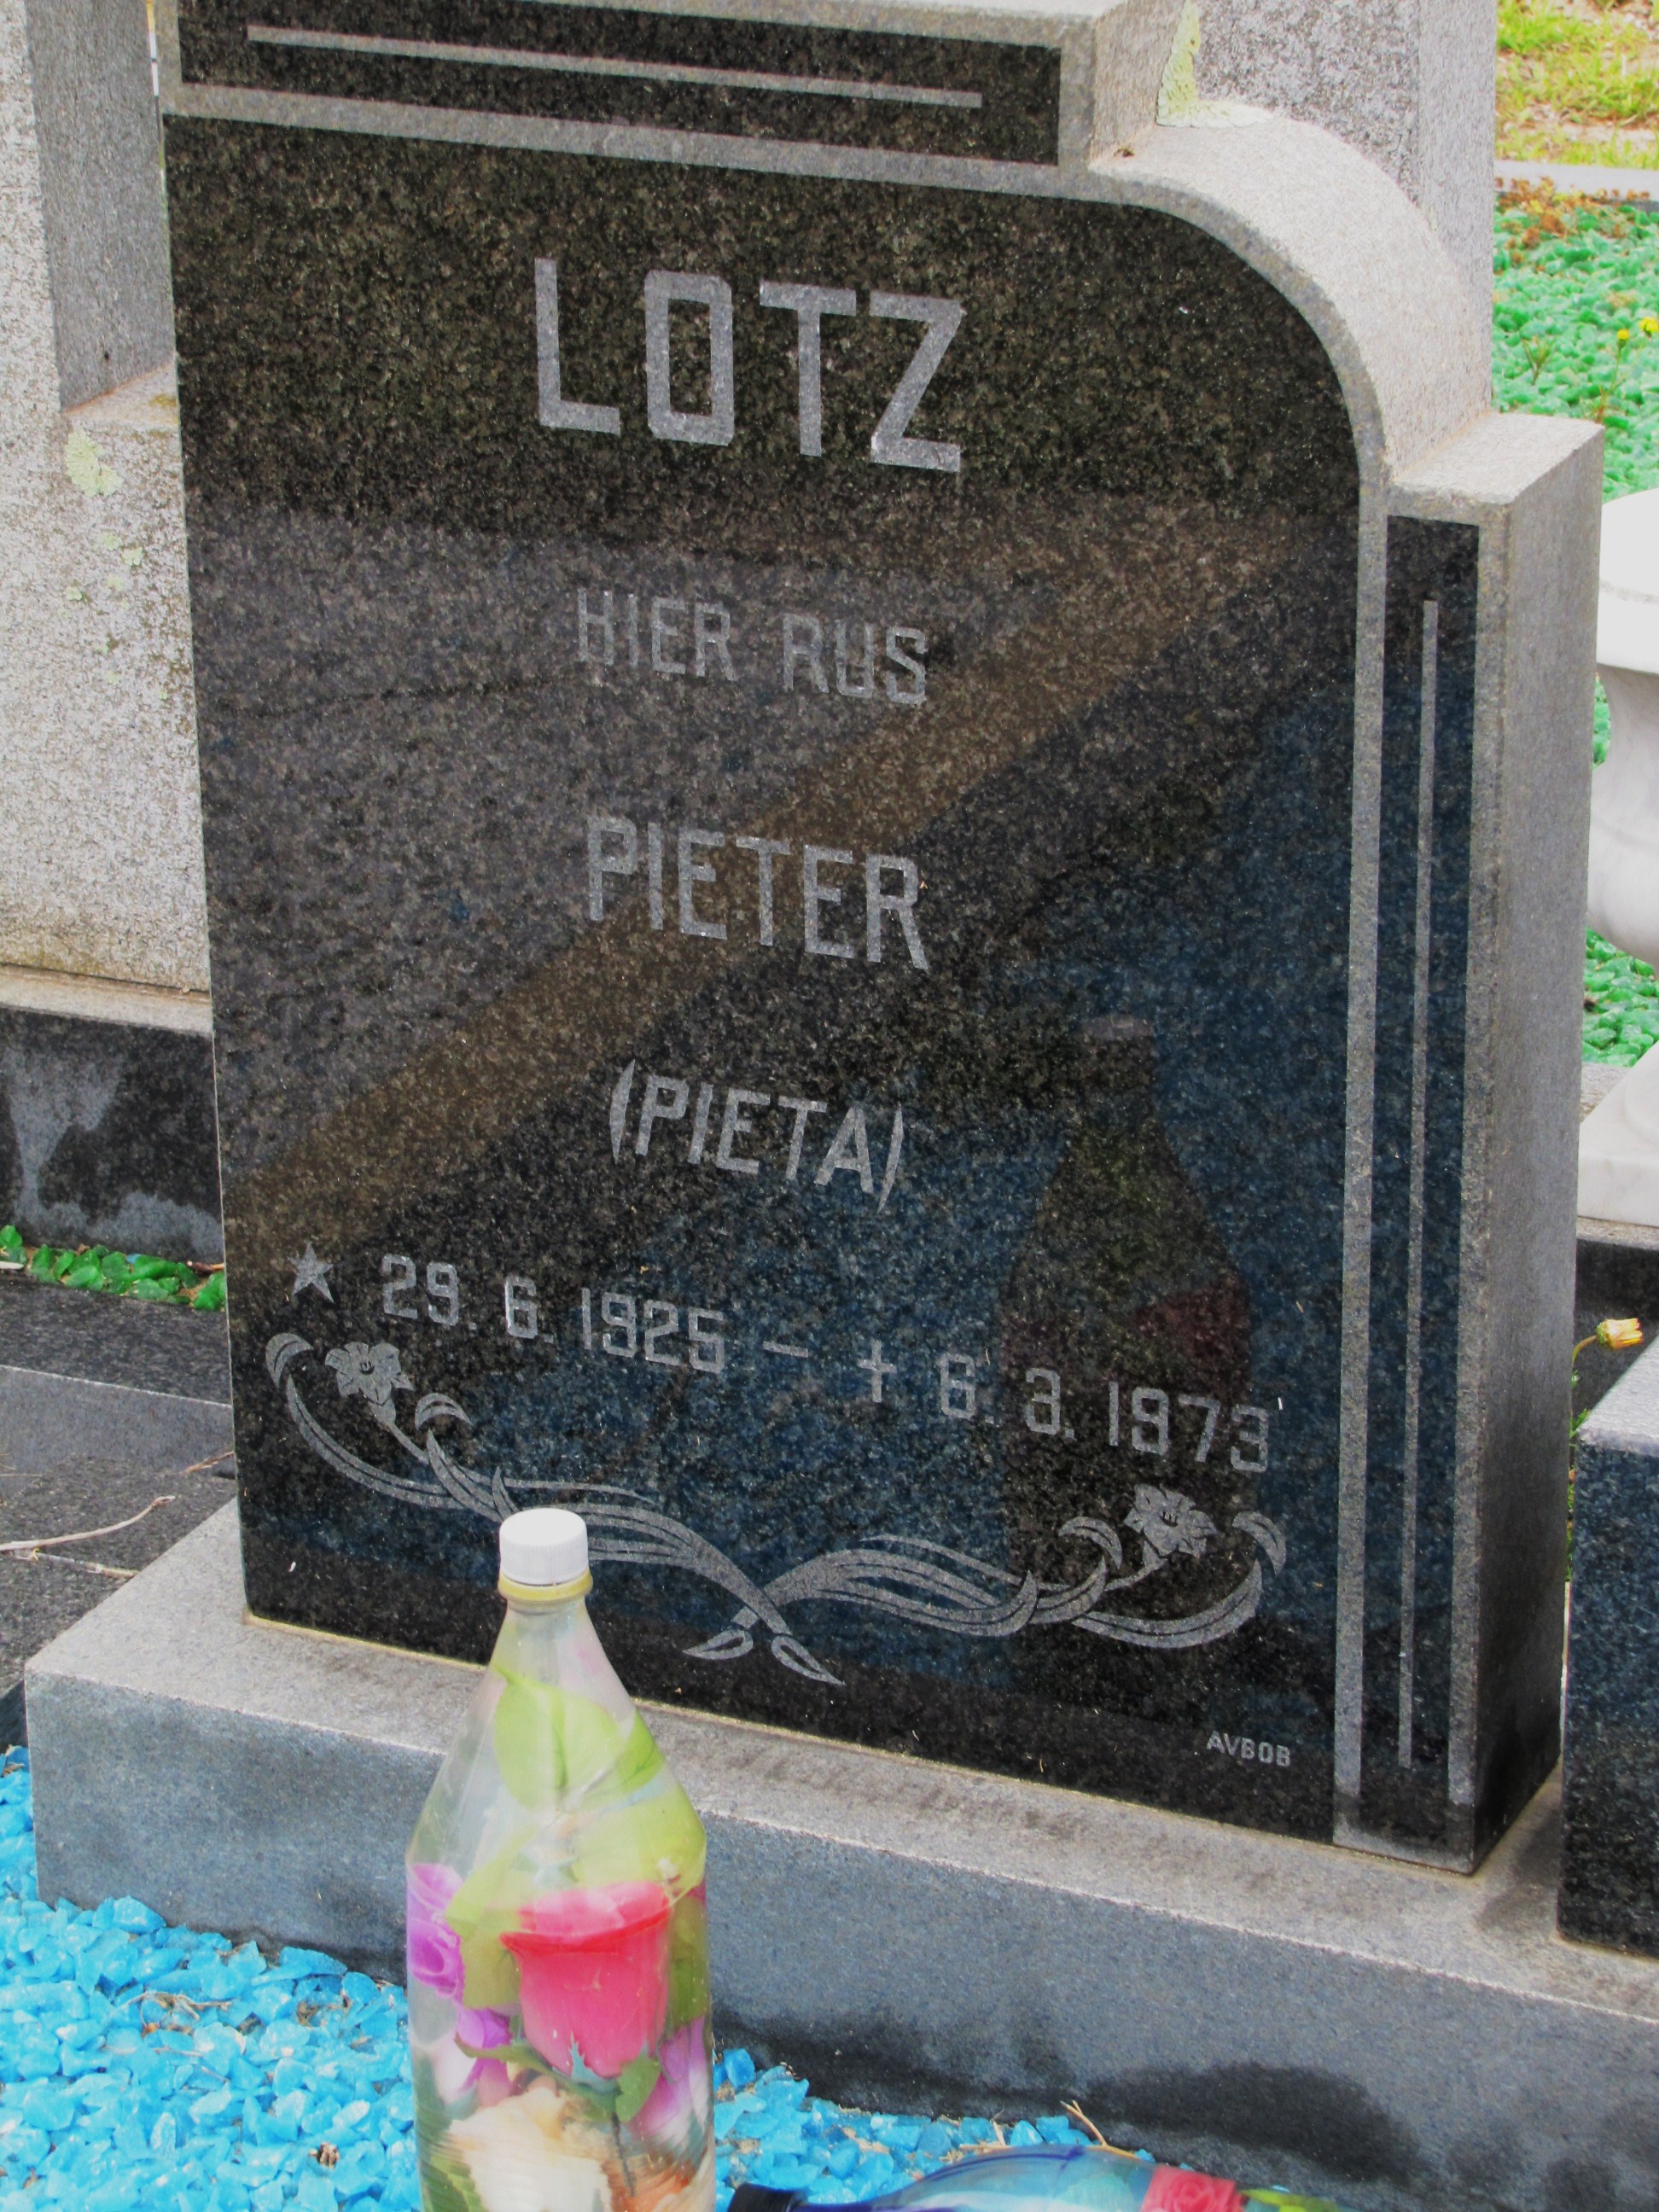 LOTZ Pieter 1925-1973